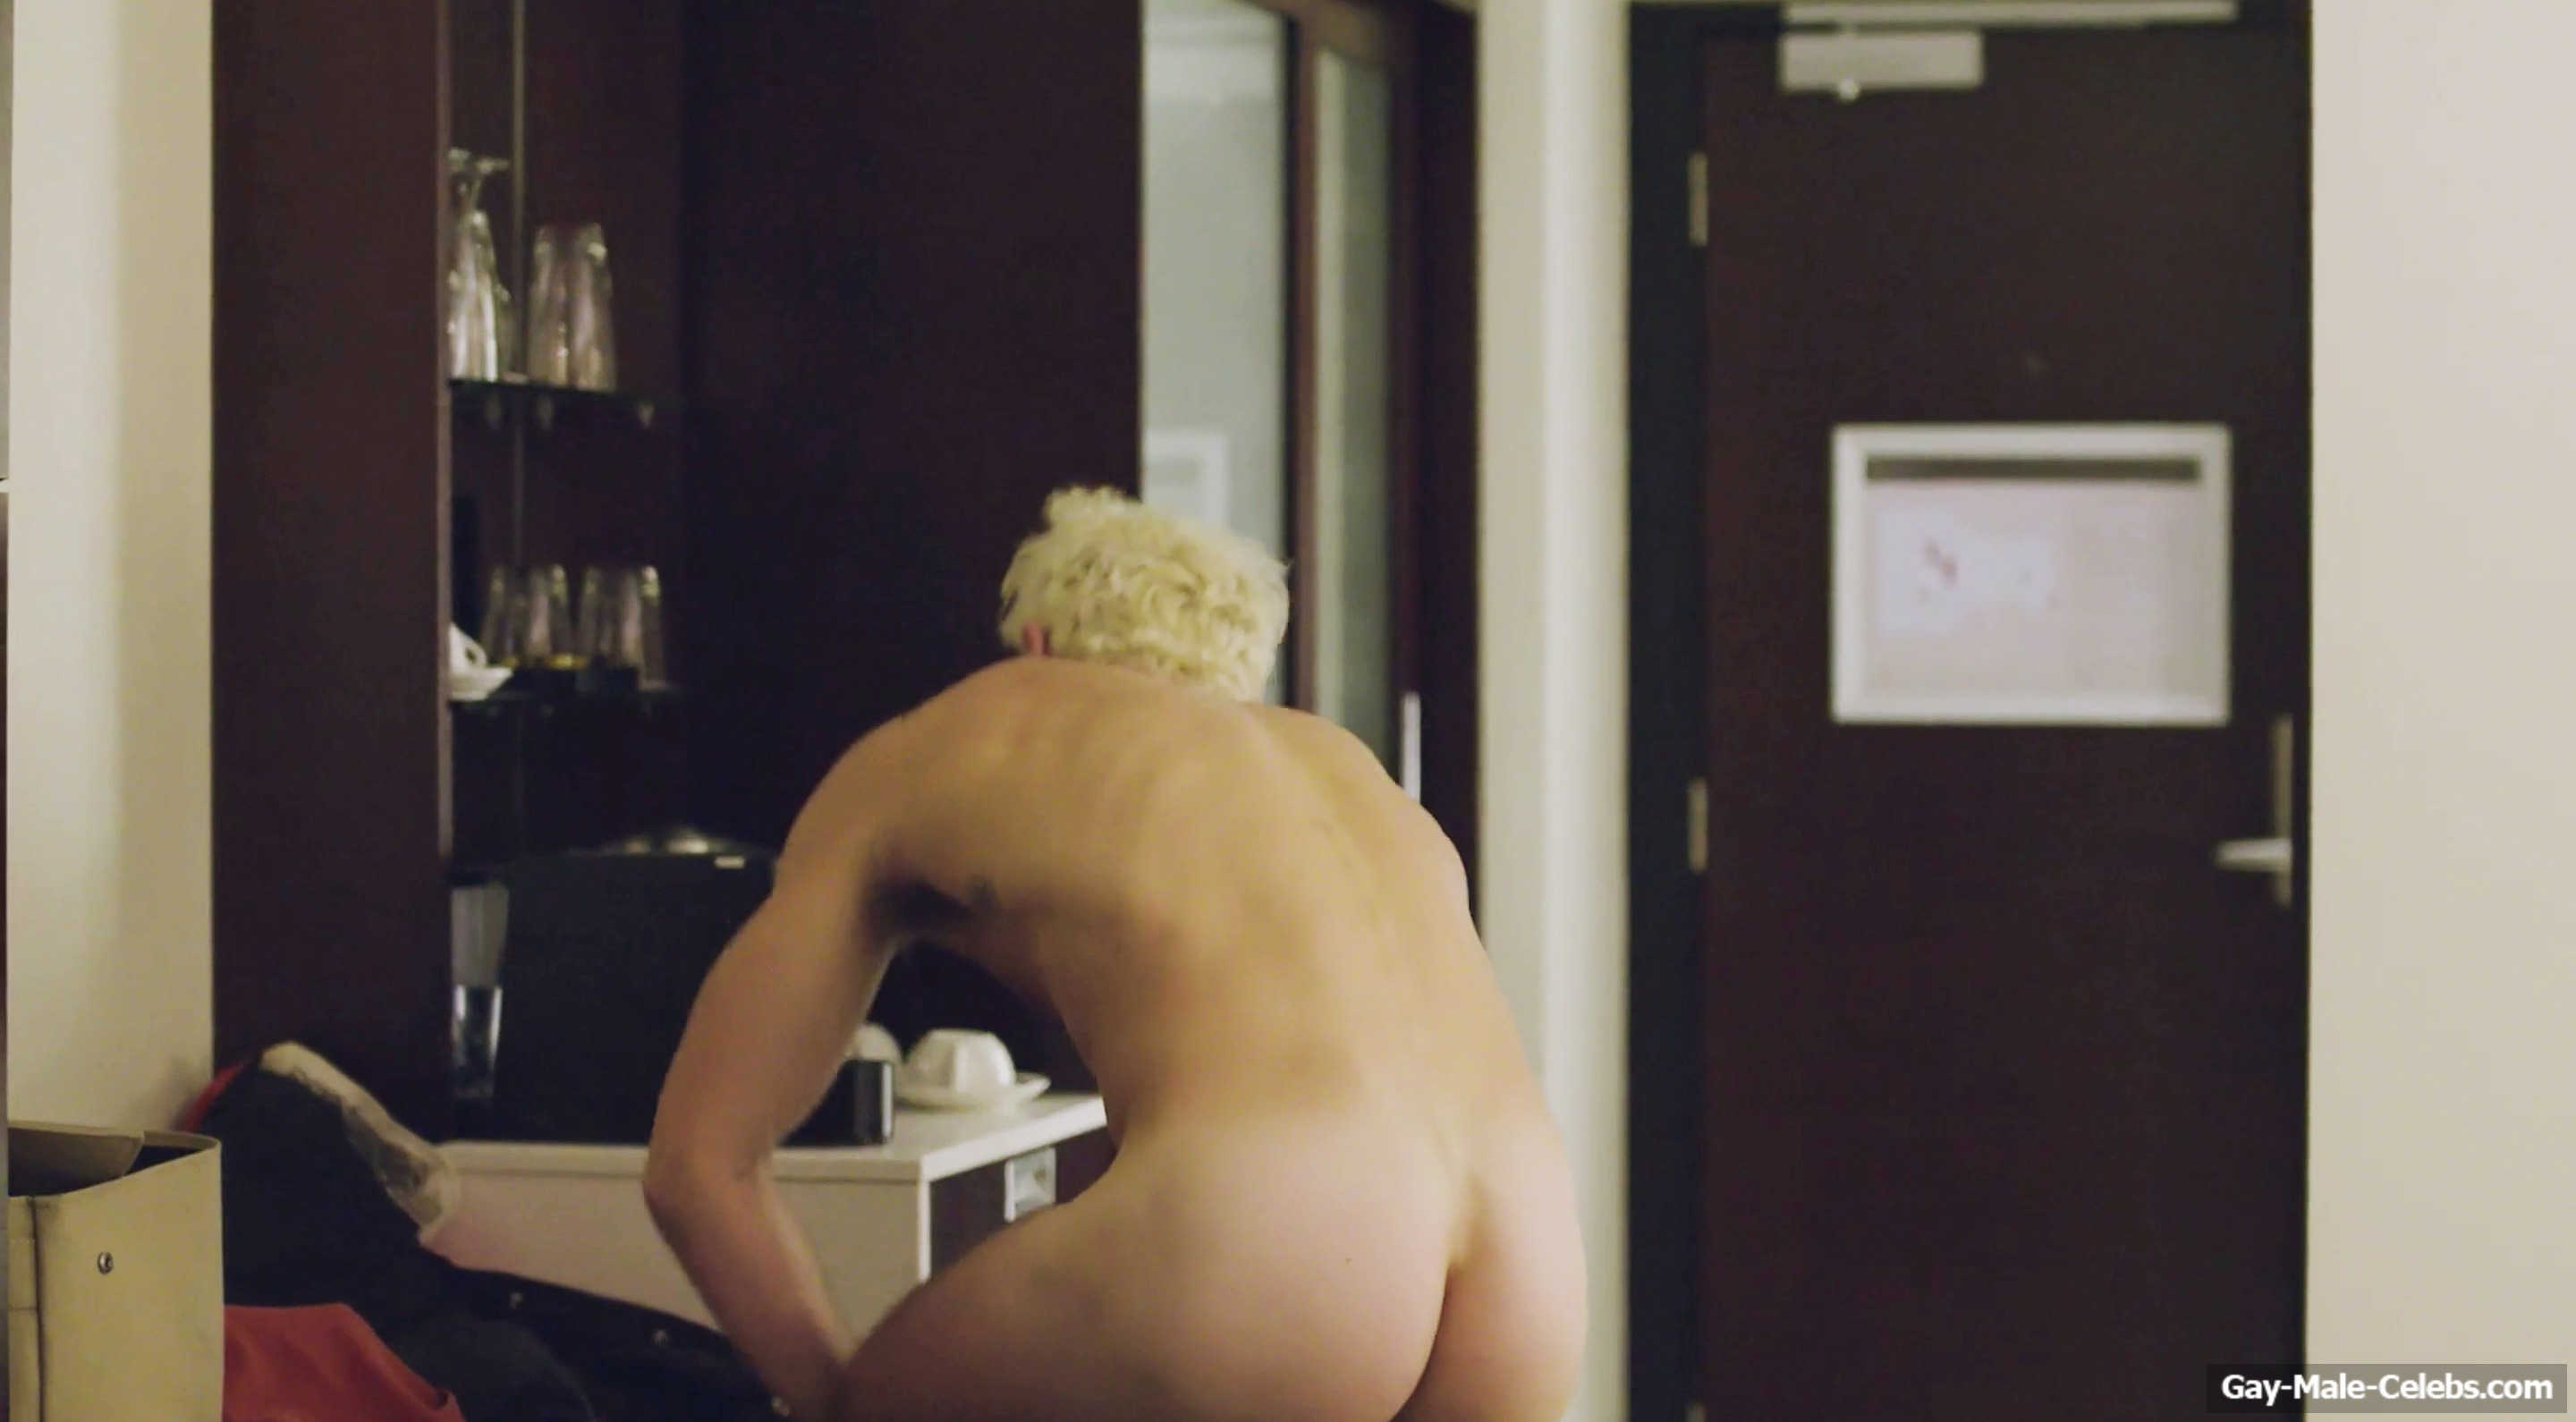 Josh McKenzie Nude Cock And Gay Sex Scenes